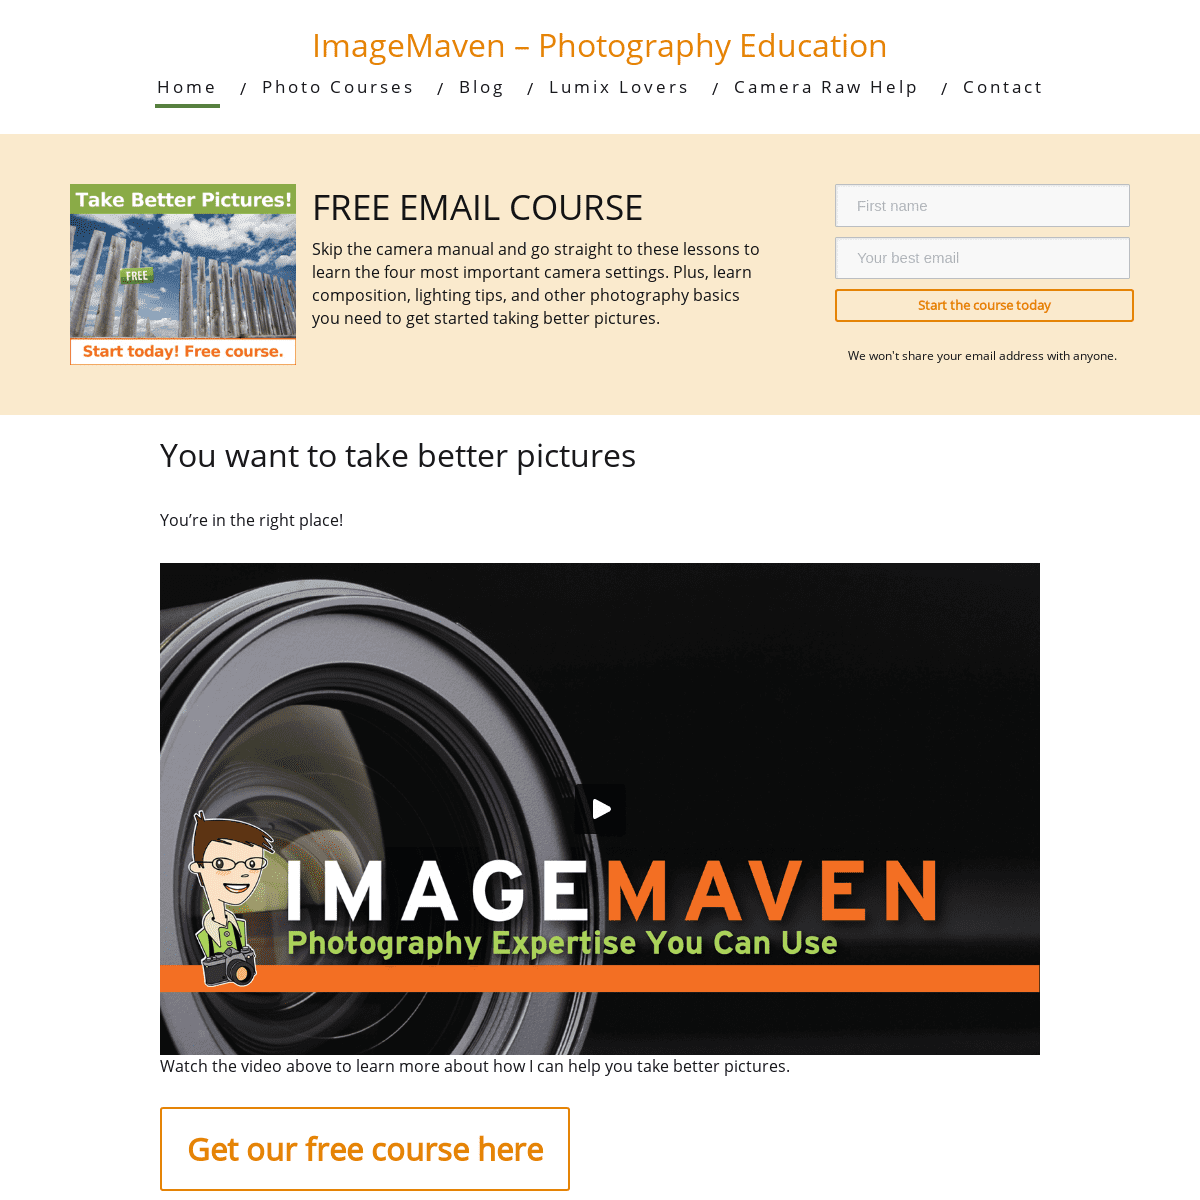 A complete backup of imagemaven.com